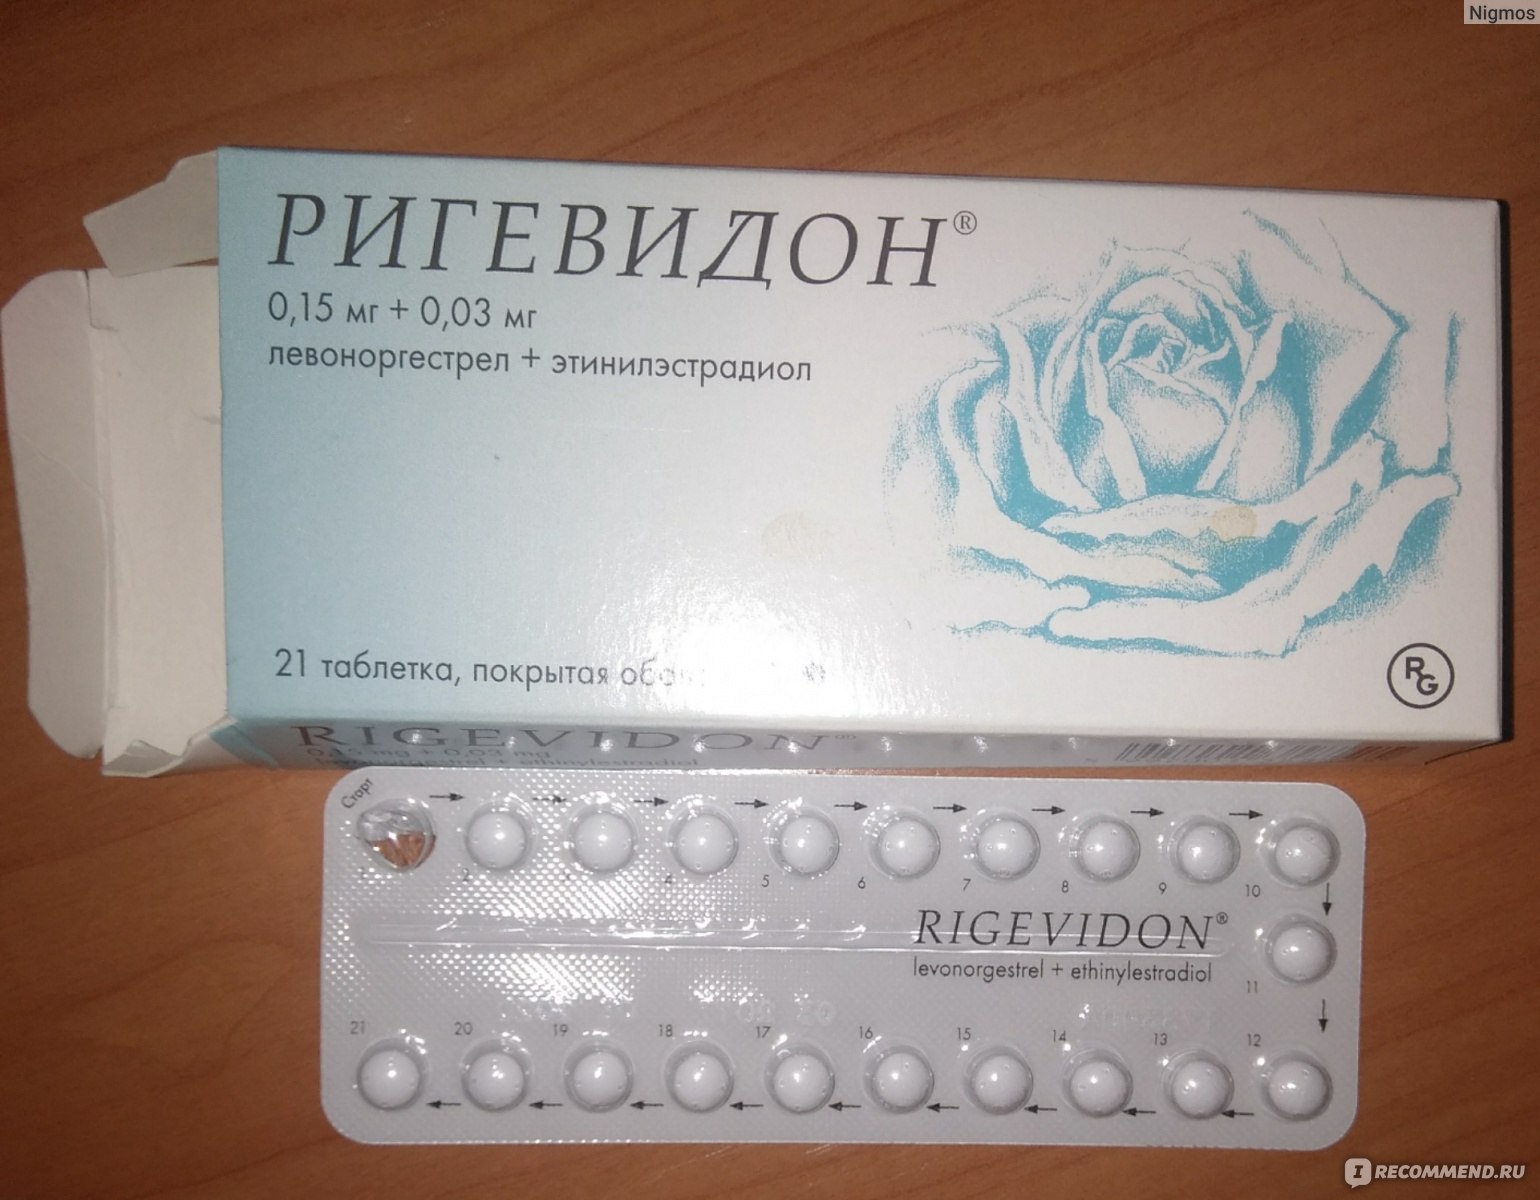 Форум против беременности. Противозачаточные таблетки ригевидон. Гормональный препарат ригевидон. Противозачаточные таблетки для женщин ригевидон. Таблетки противозачаточные реговидон.